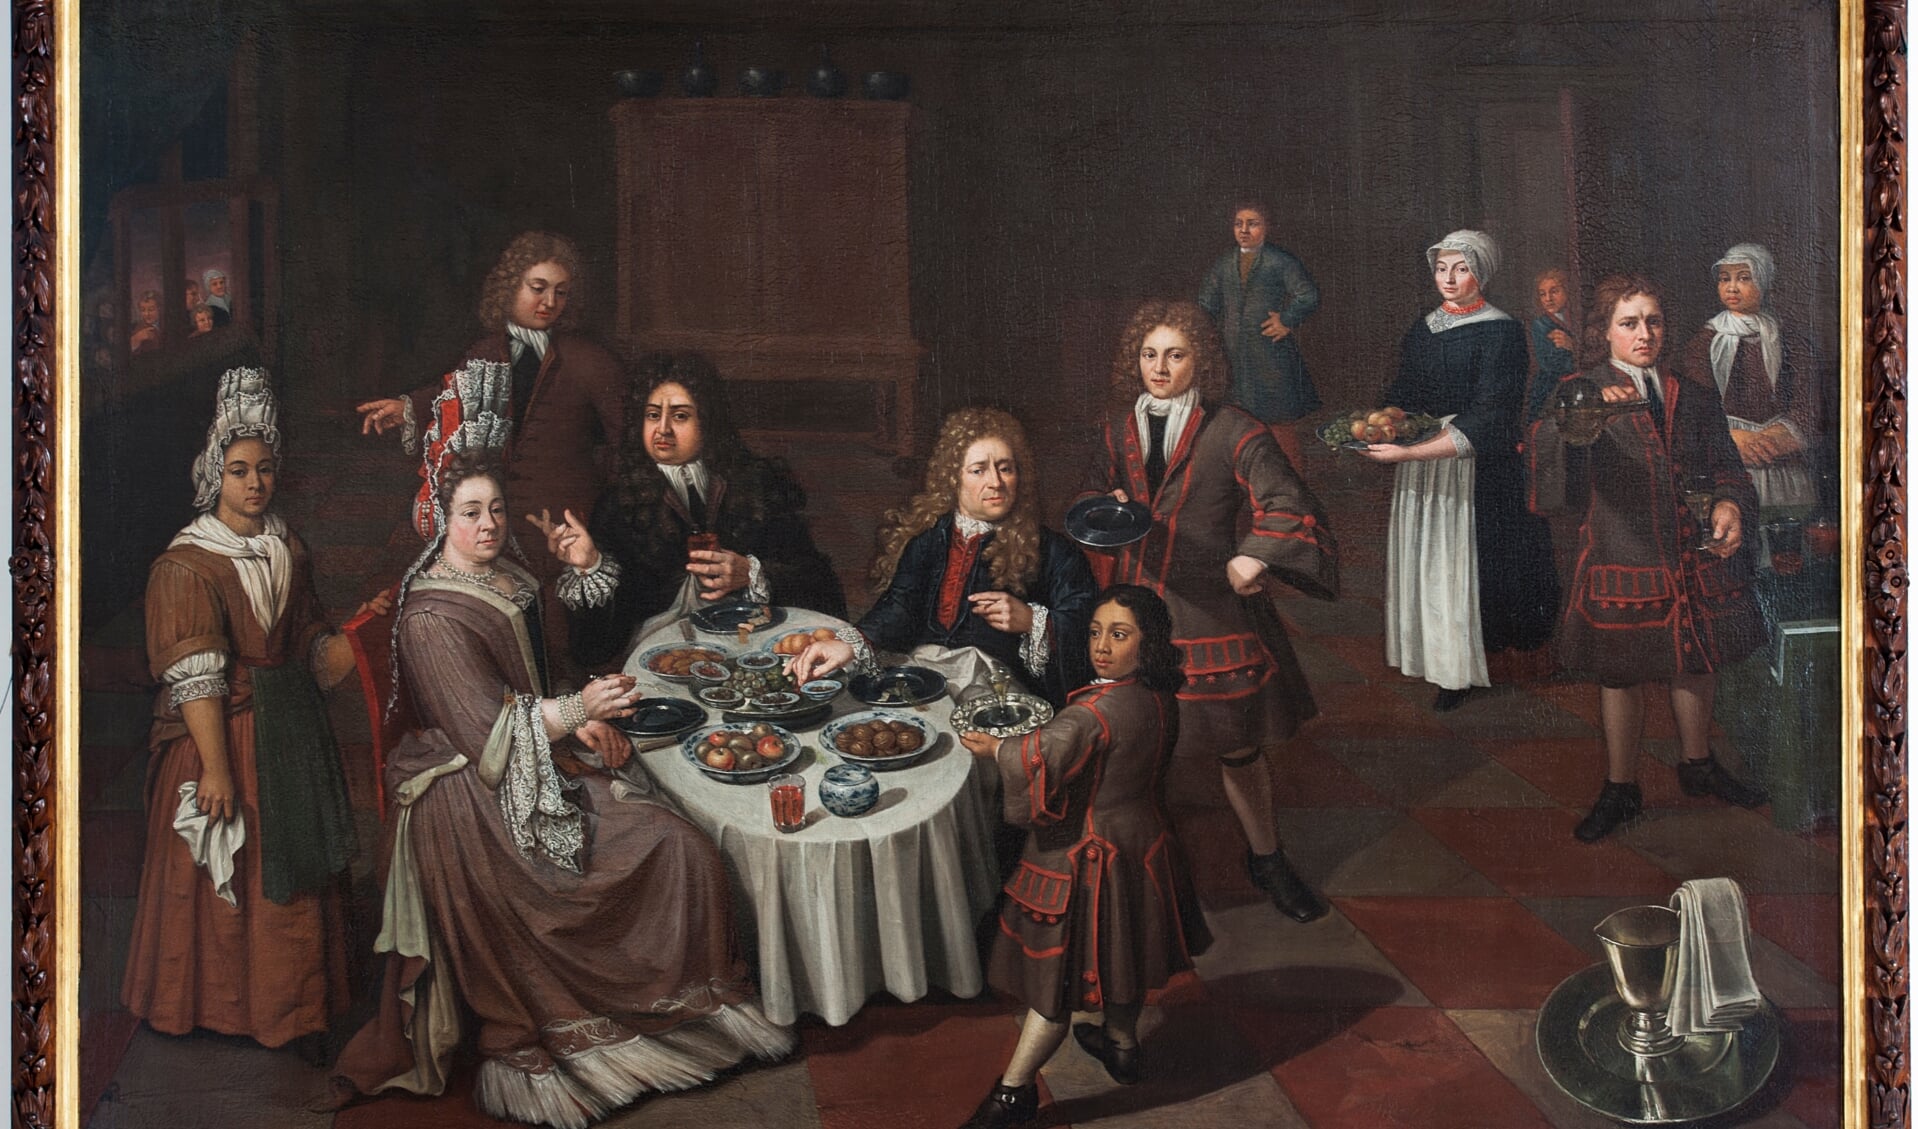 Het schilderij “Maaltijd met Julius Schelto van Aitzema, Sara van der Broek, gasten en bedienden"